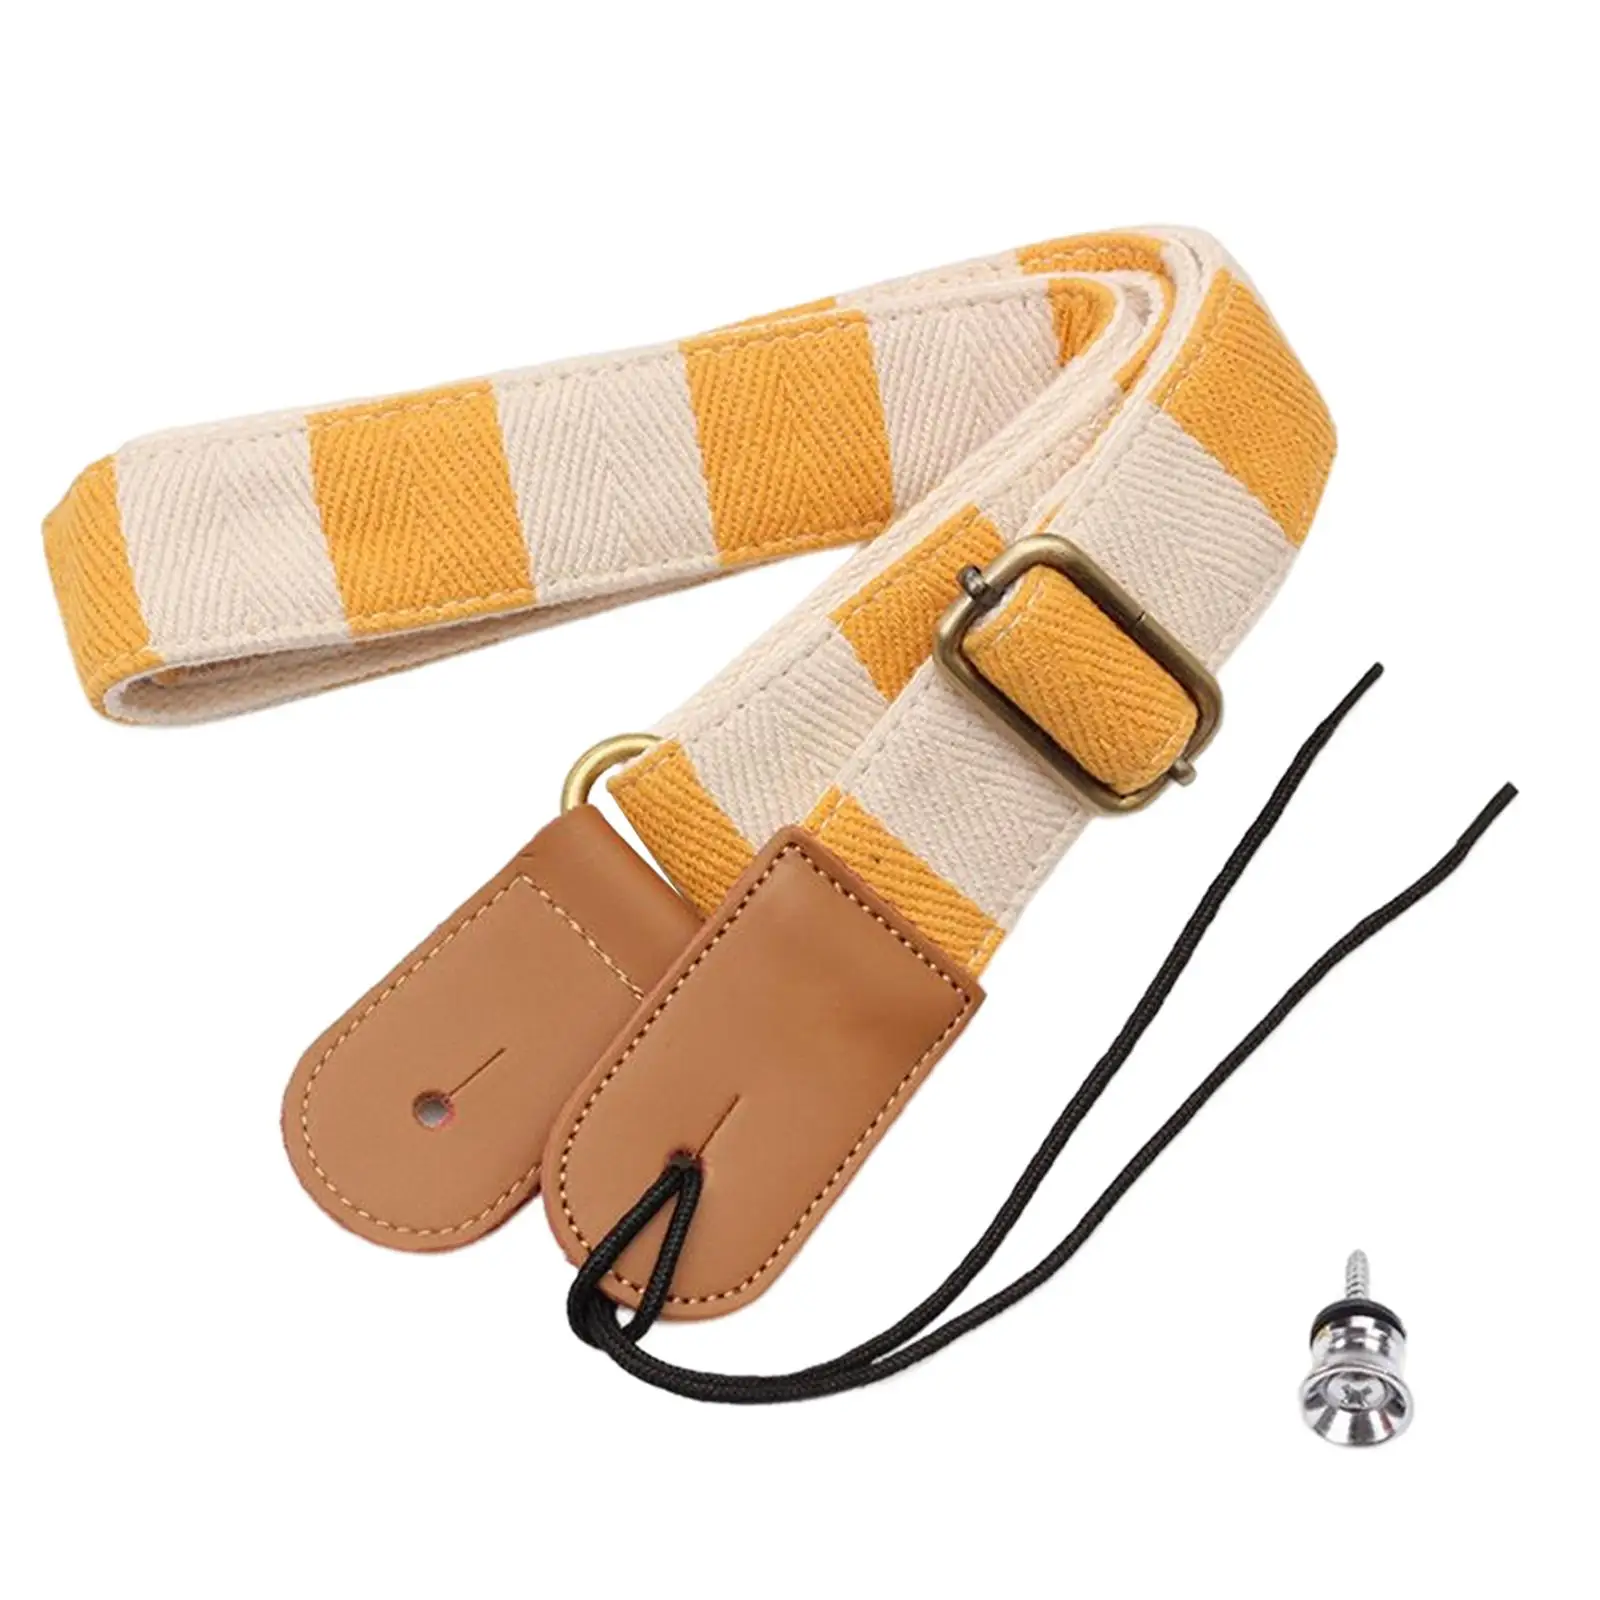 Adjustable Ukulele Strap Fashionable Stringed Instrument Accessory Wear